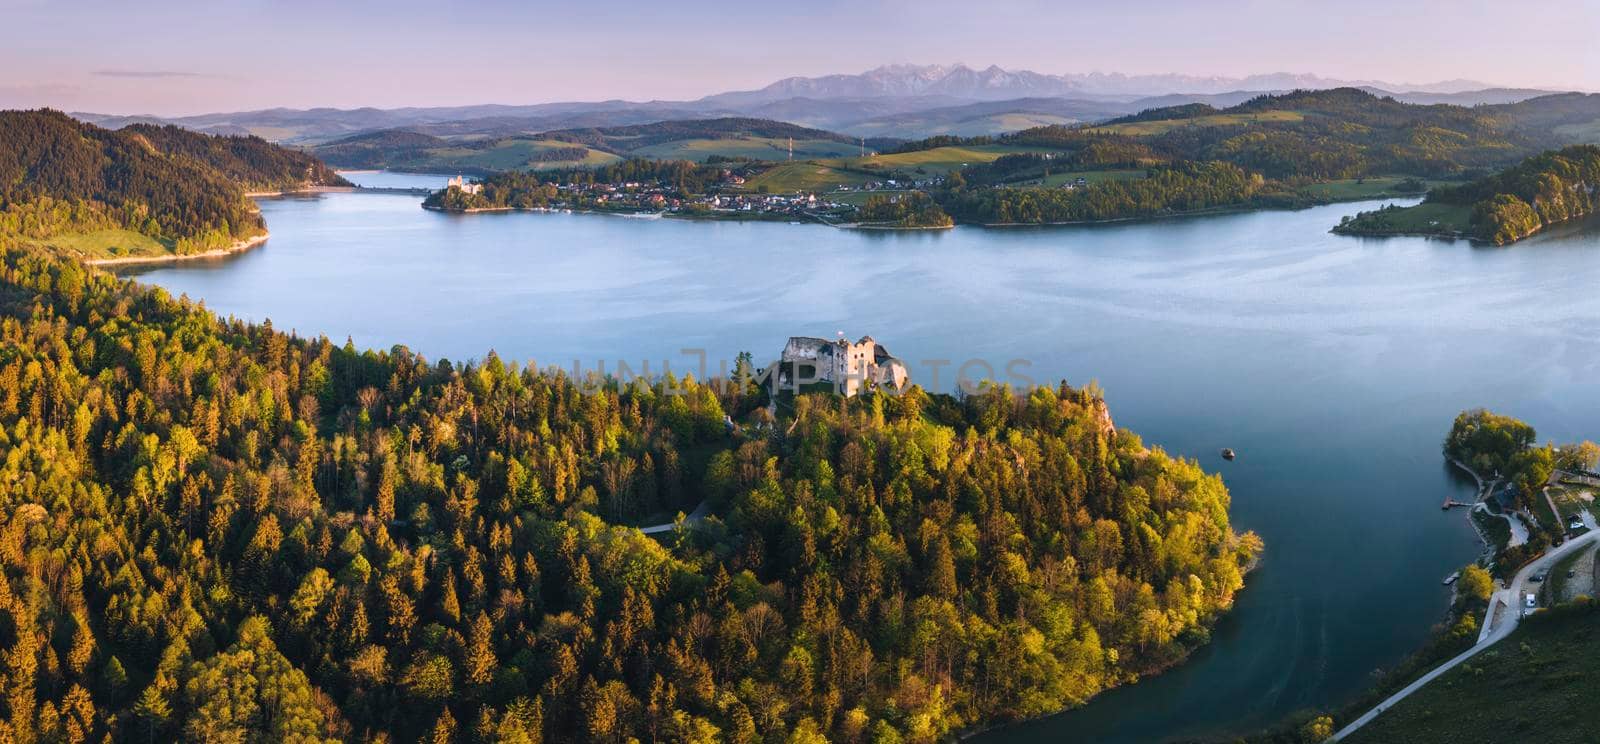 Czorsztyn Castle and Lake by benkrut